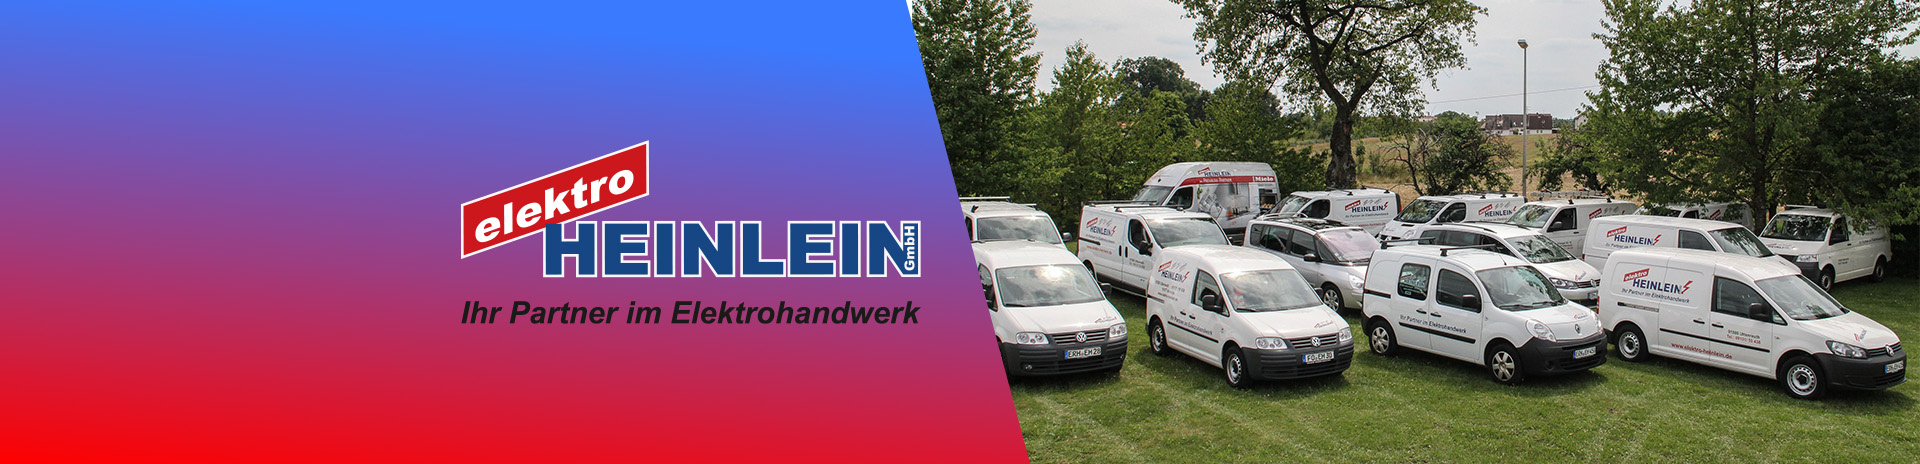 Elektro Heinlein GmbH in Uttenreuth